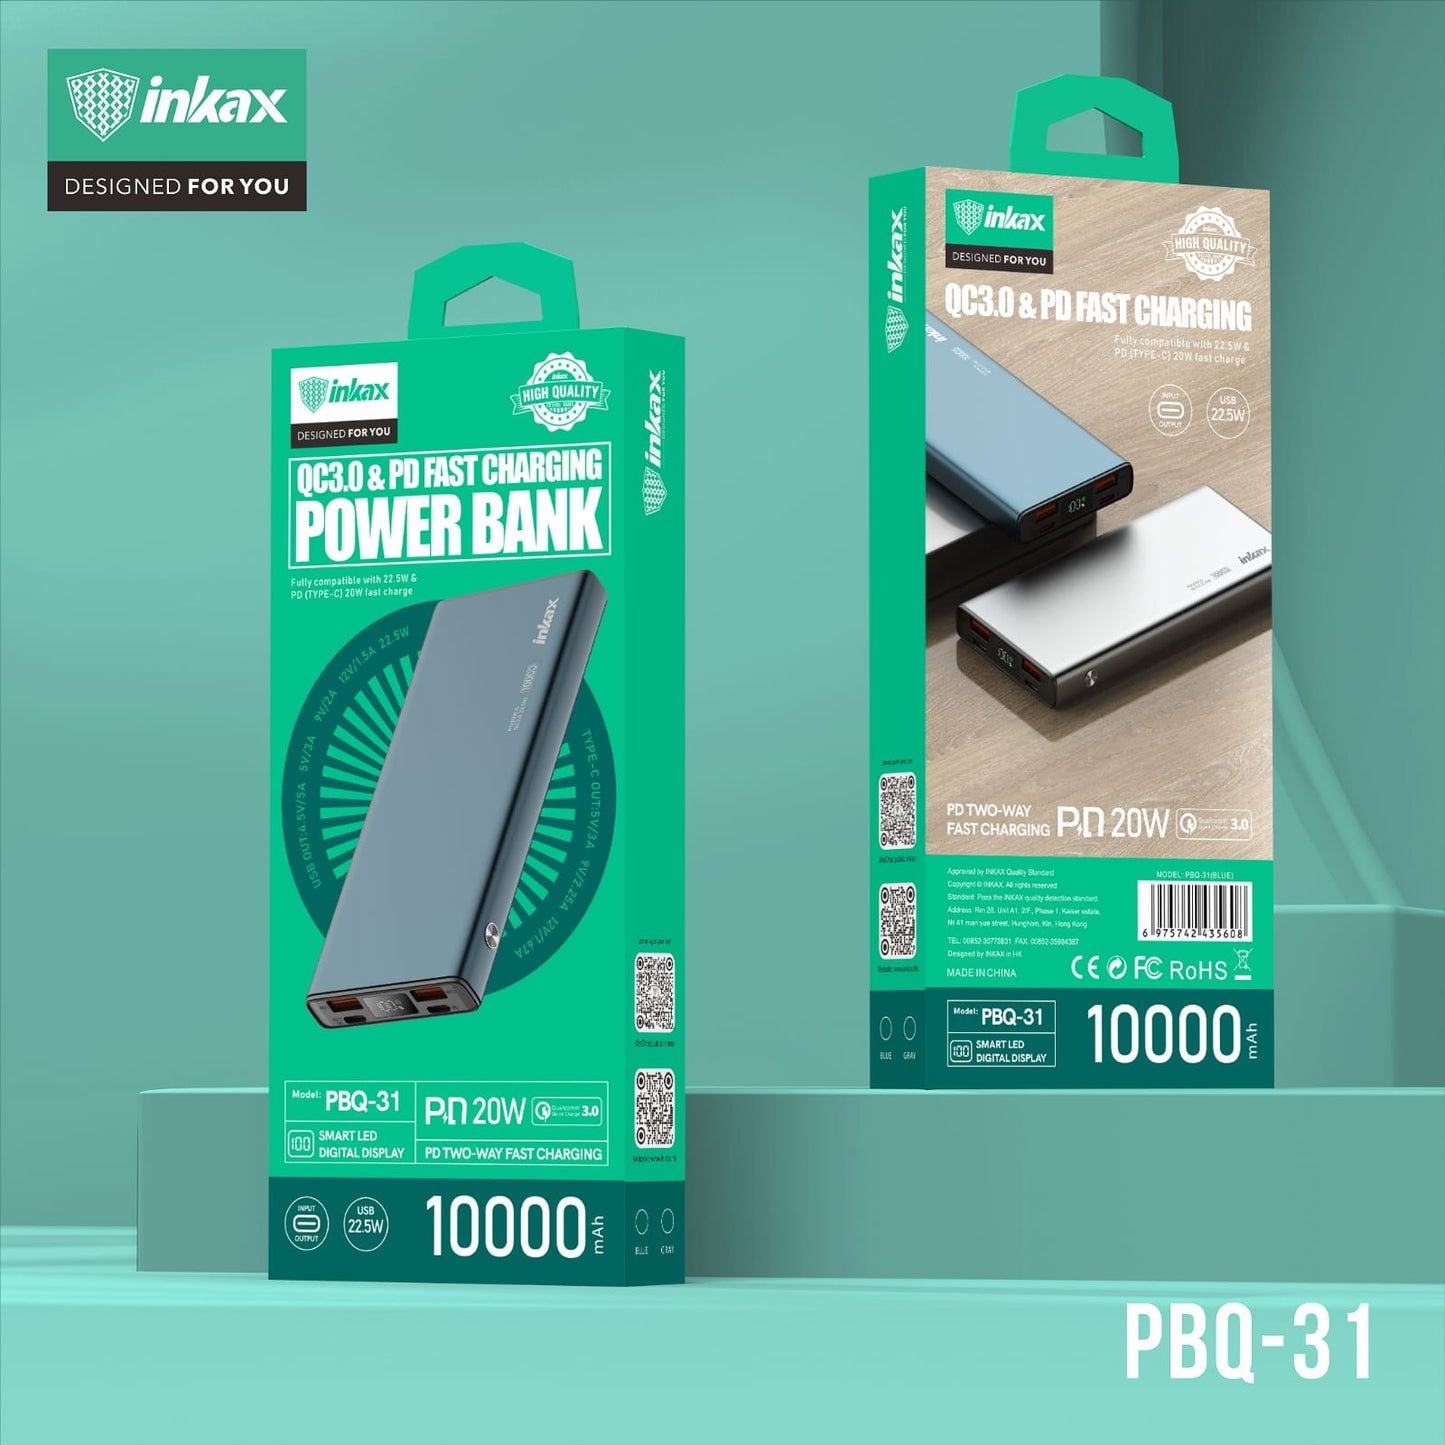 Inkax 10000mAh Fast Charging Power Bank - Gray